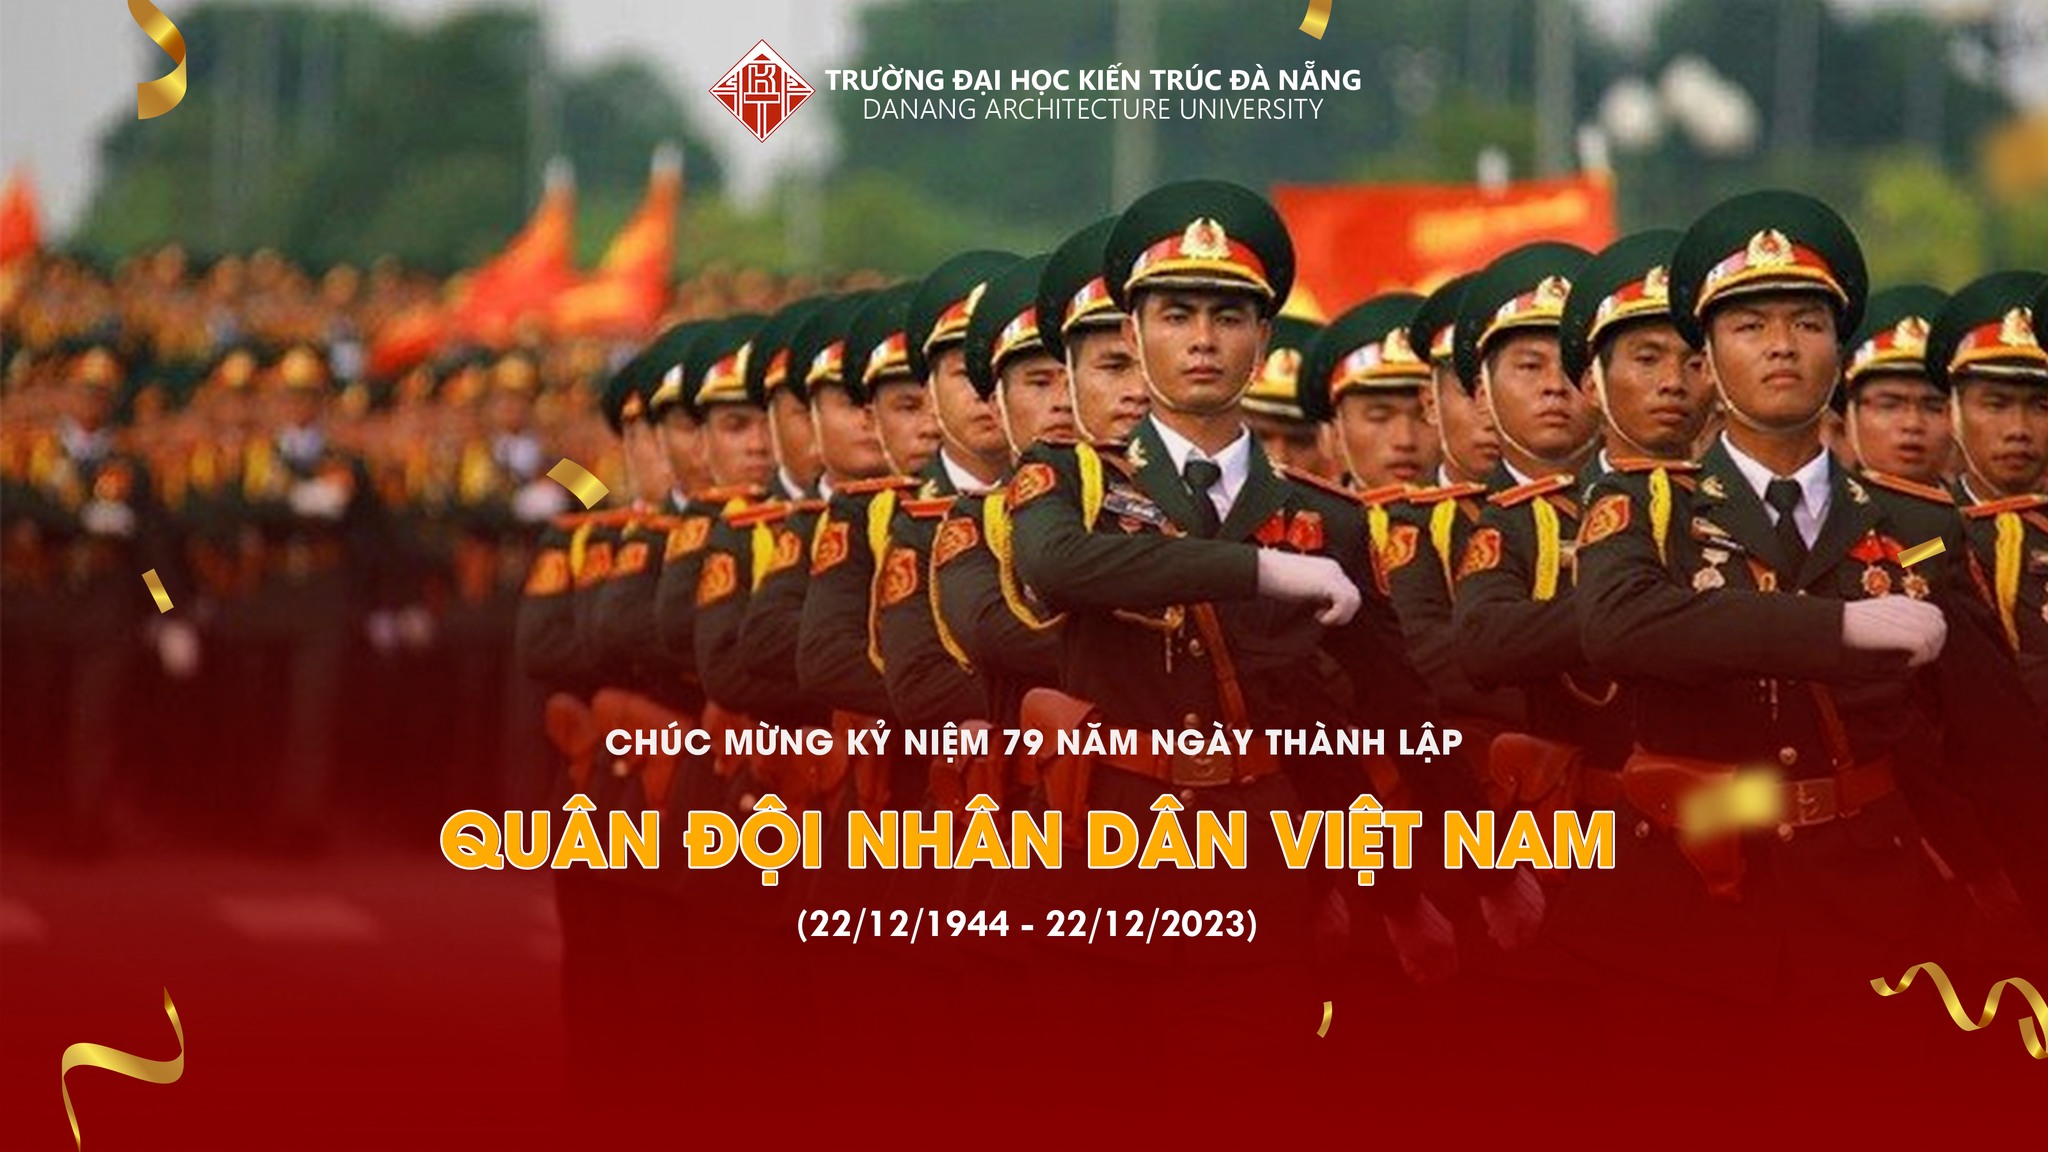 Chúc mừng 79 năm ngày thành lập Quân đội nhân dân Việt Nam (22/12/1944 - 22/12/2023)